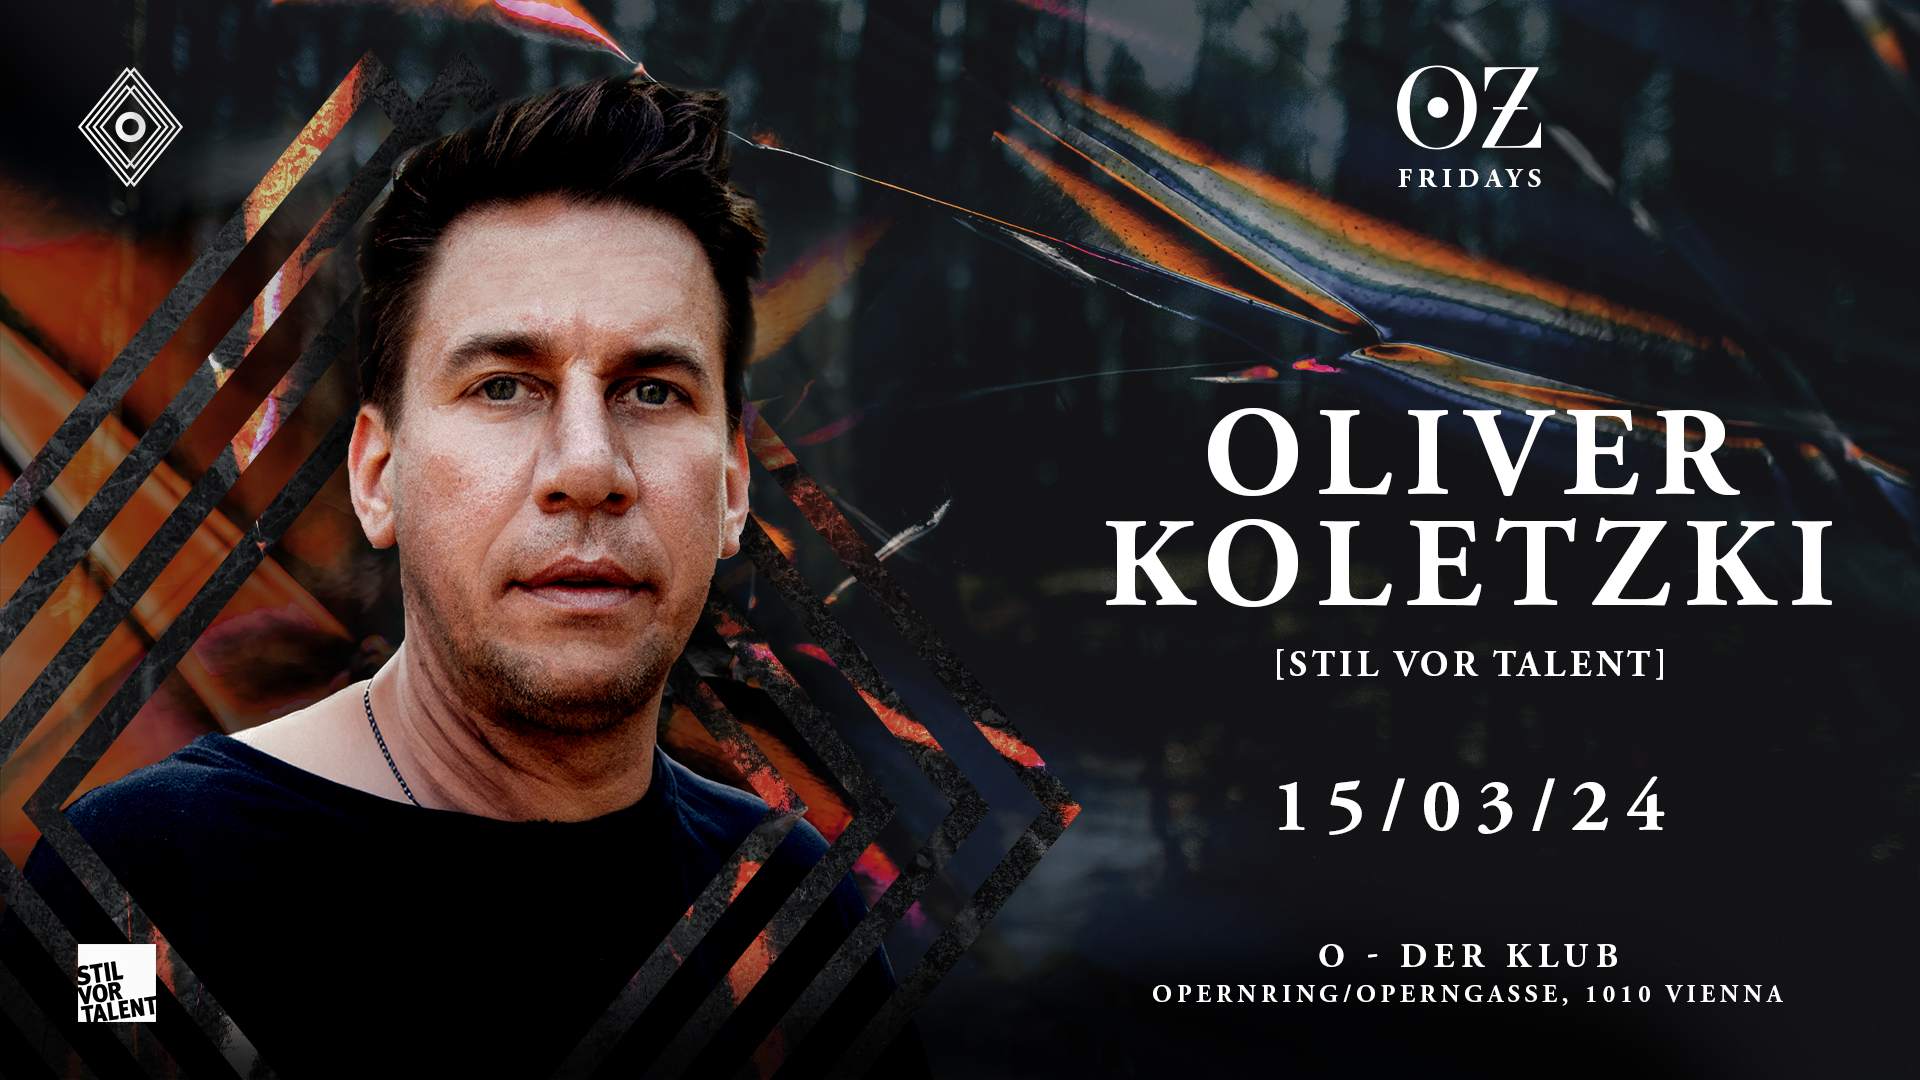 Oz with Oliver Koletzki - Página frontal